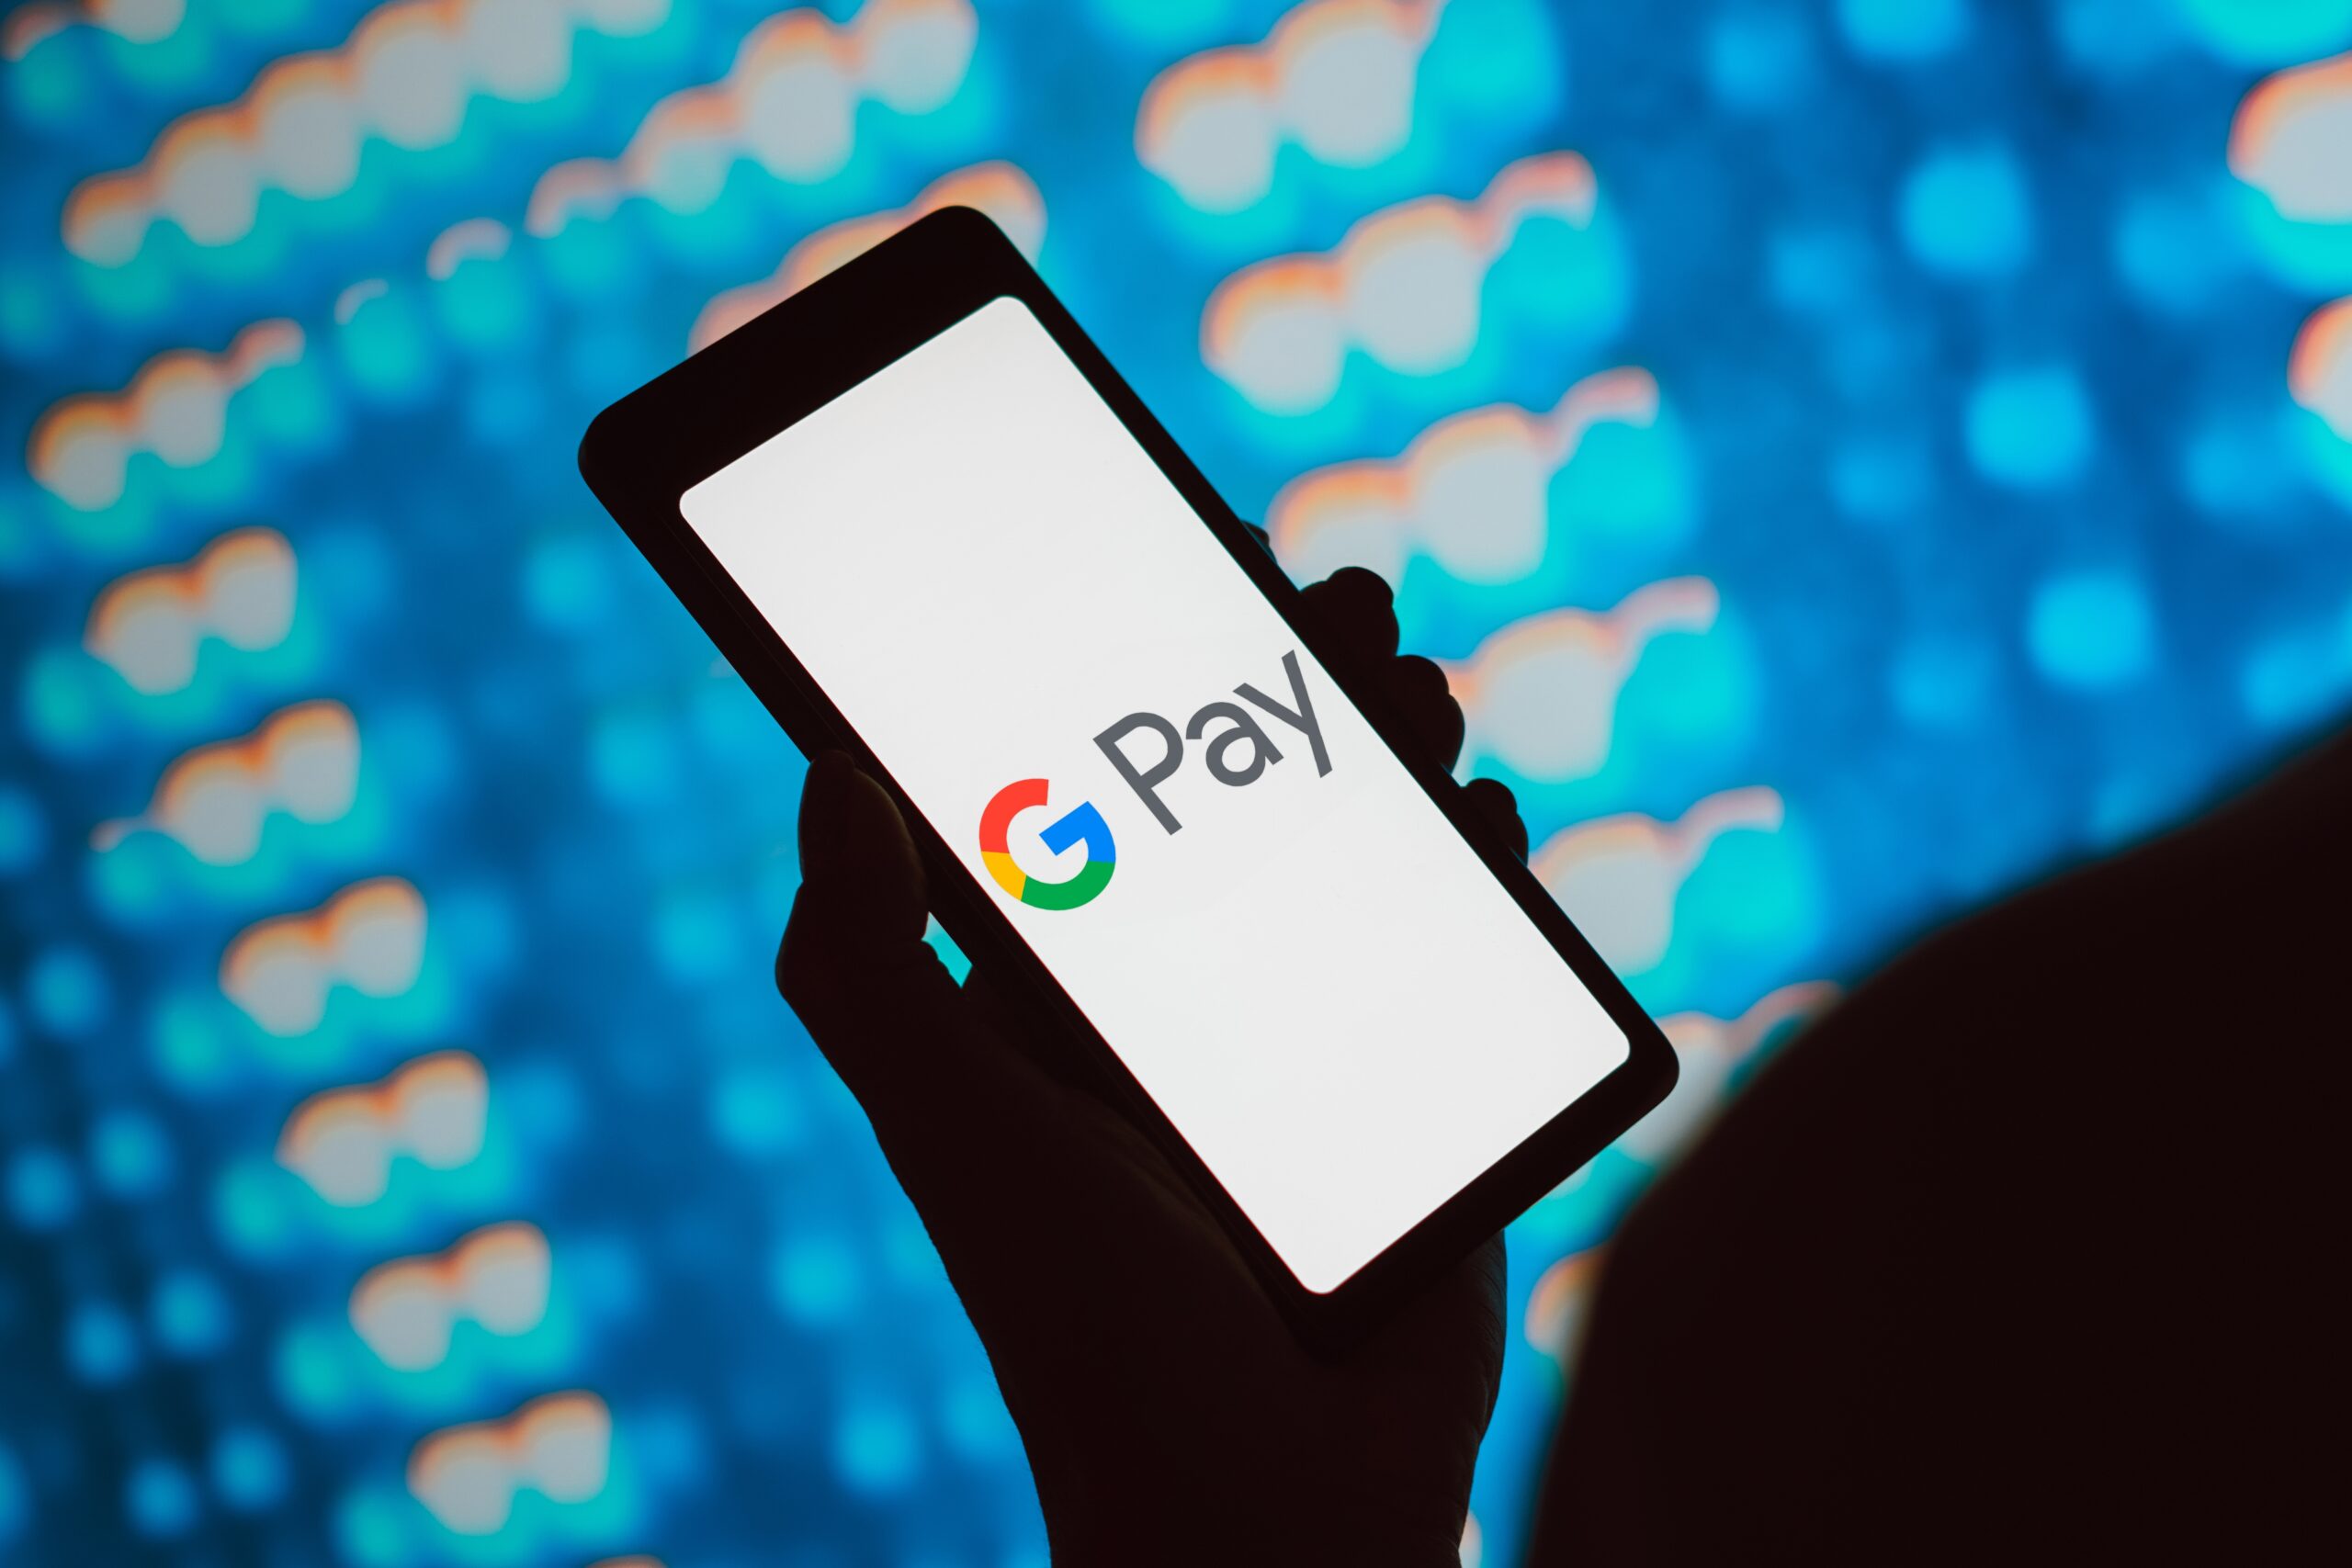 Osoba trzymająca telefon z logo Google Pay na ekranie, w tle rozmazane, kolorowe wzory.